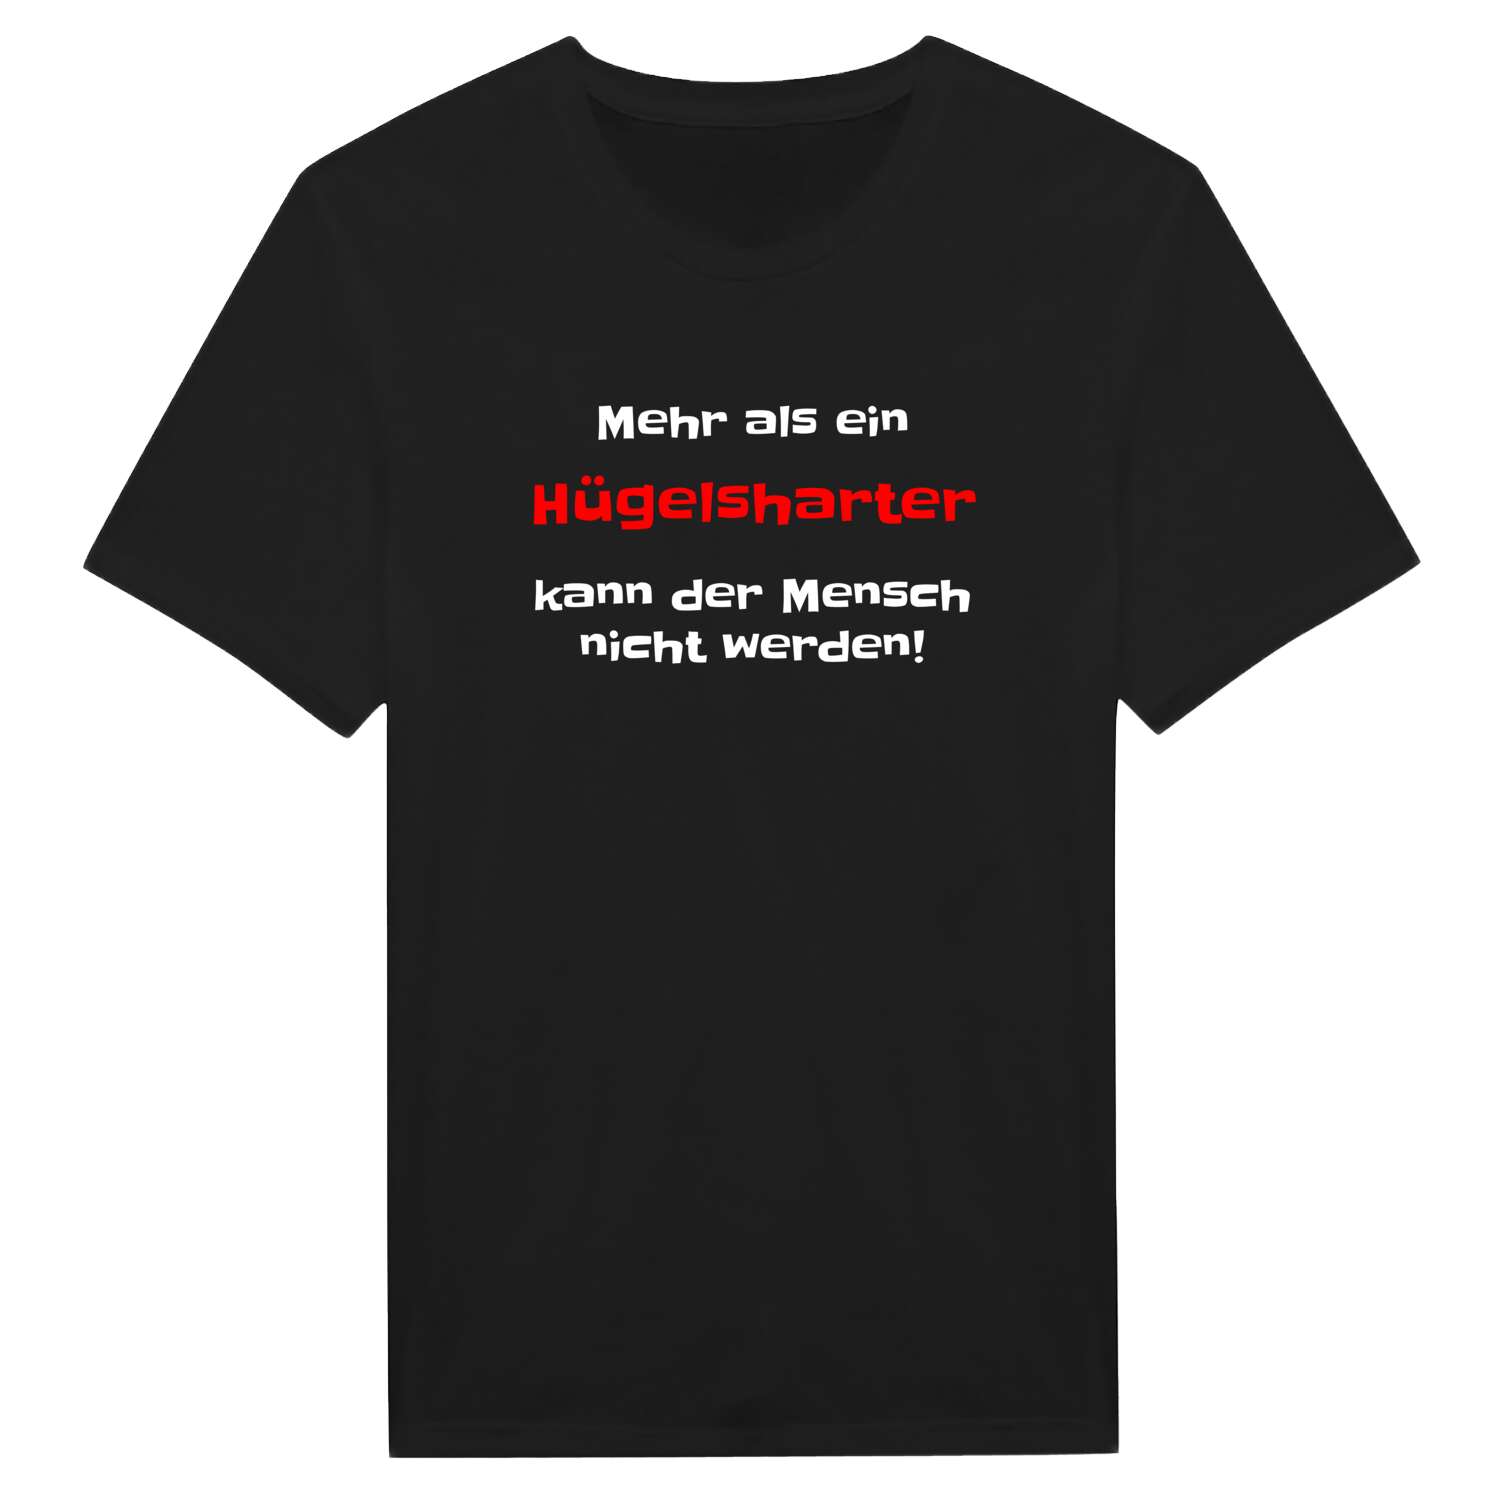 Hügelshart T-Shirt »Mehr als ein«